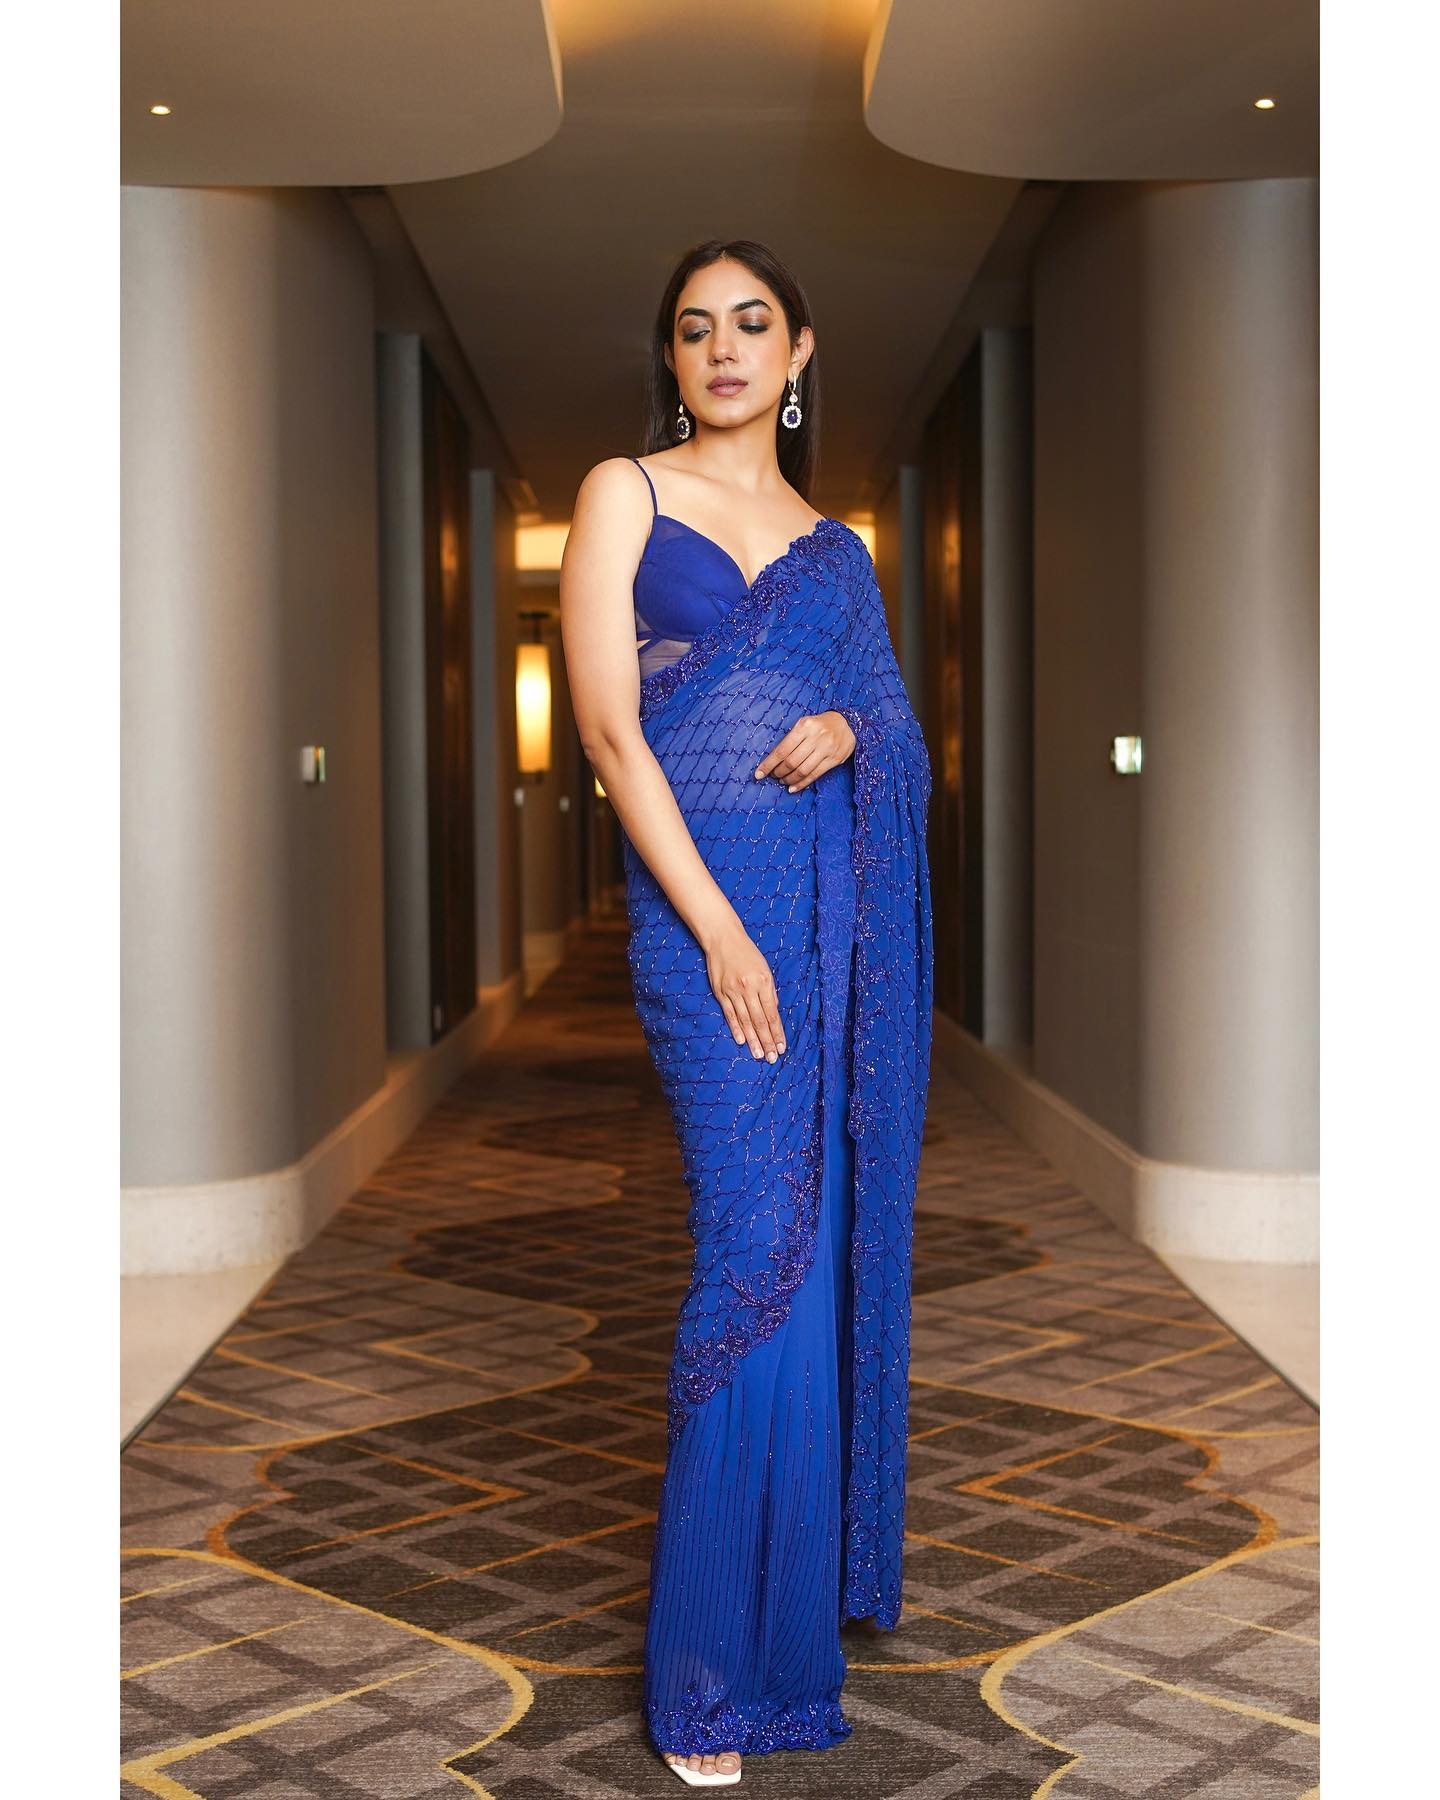 Actress Ritu Varma Hot And Sexy In Blue Backless Saree Photos 3